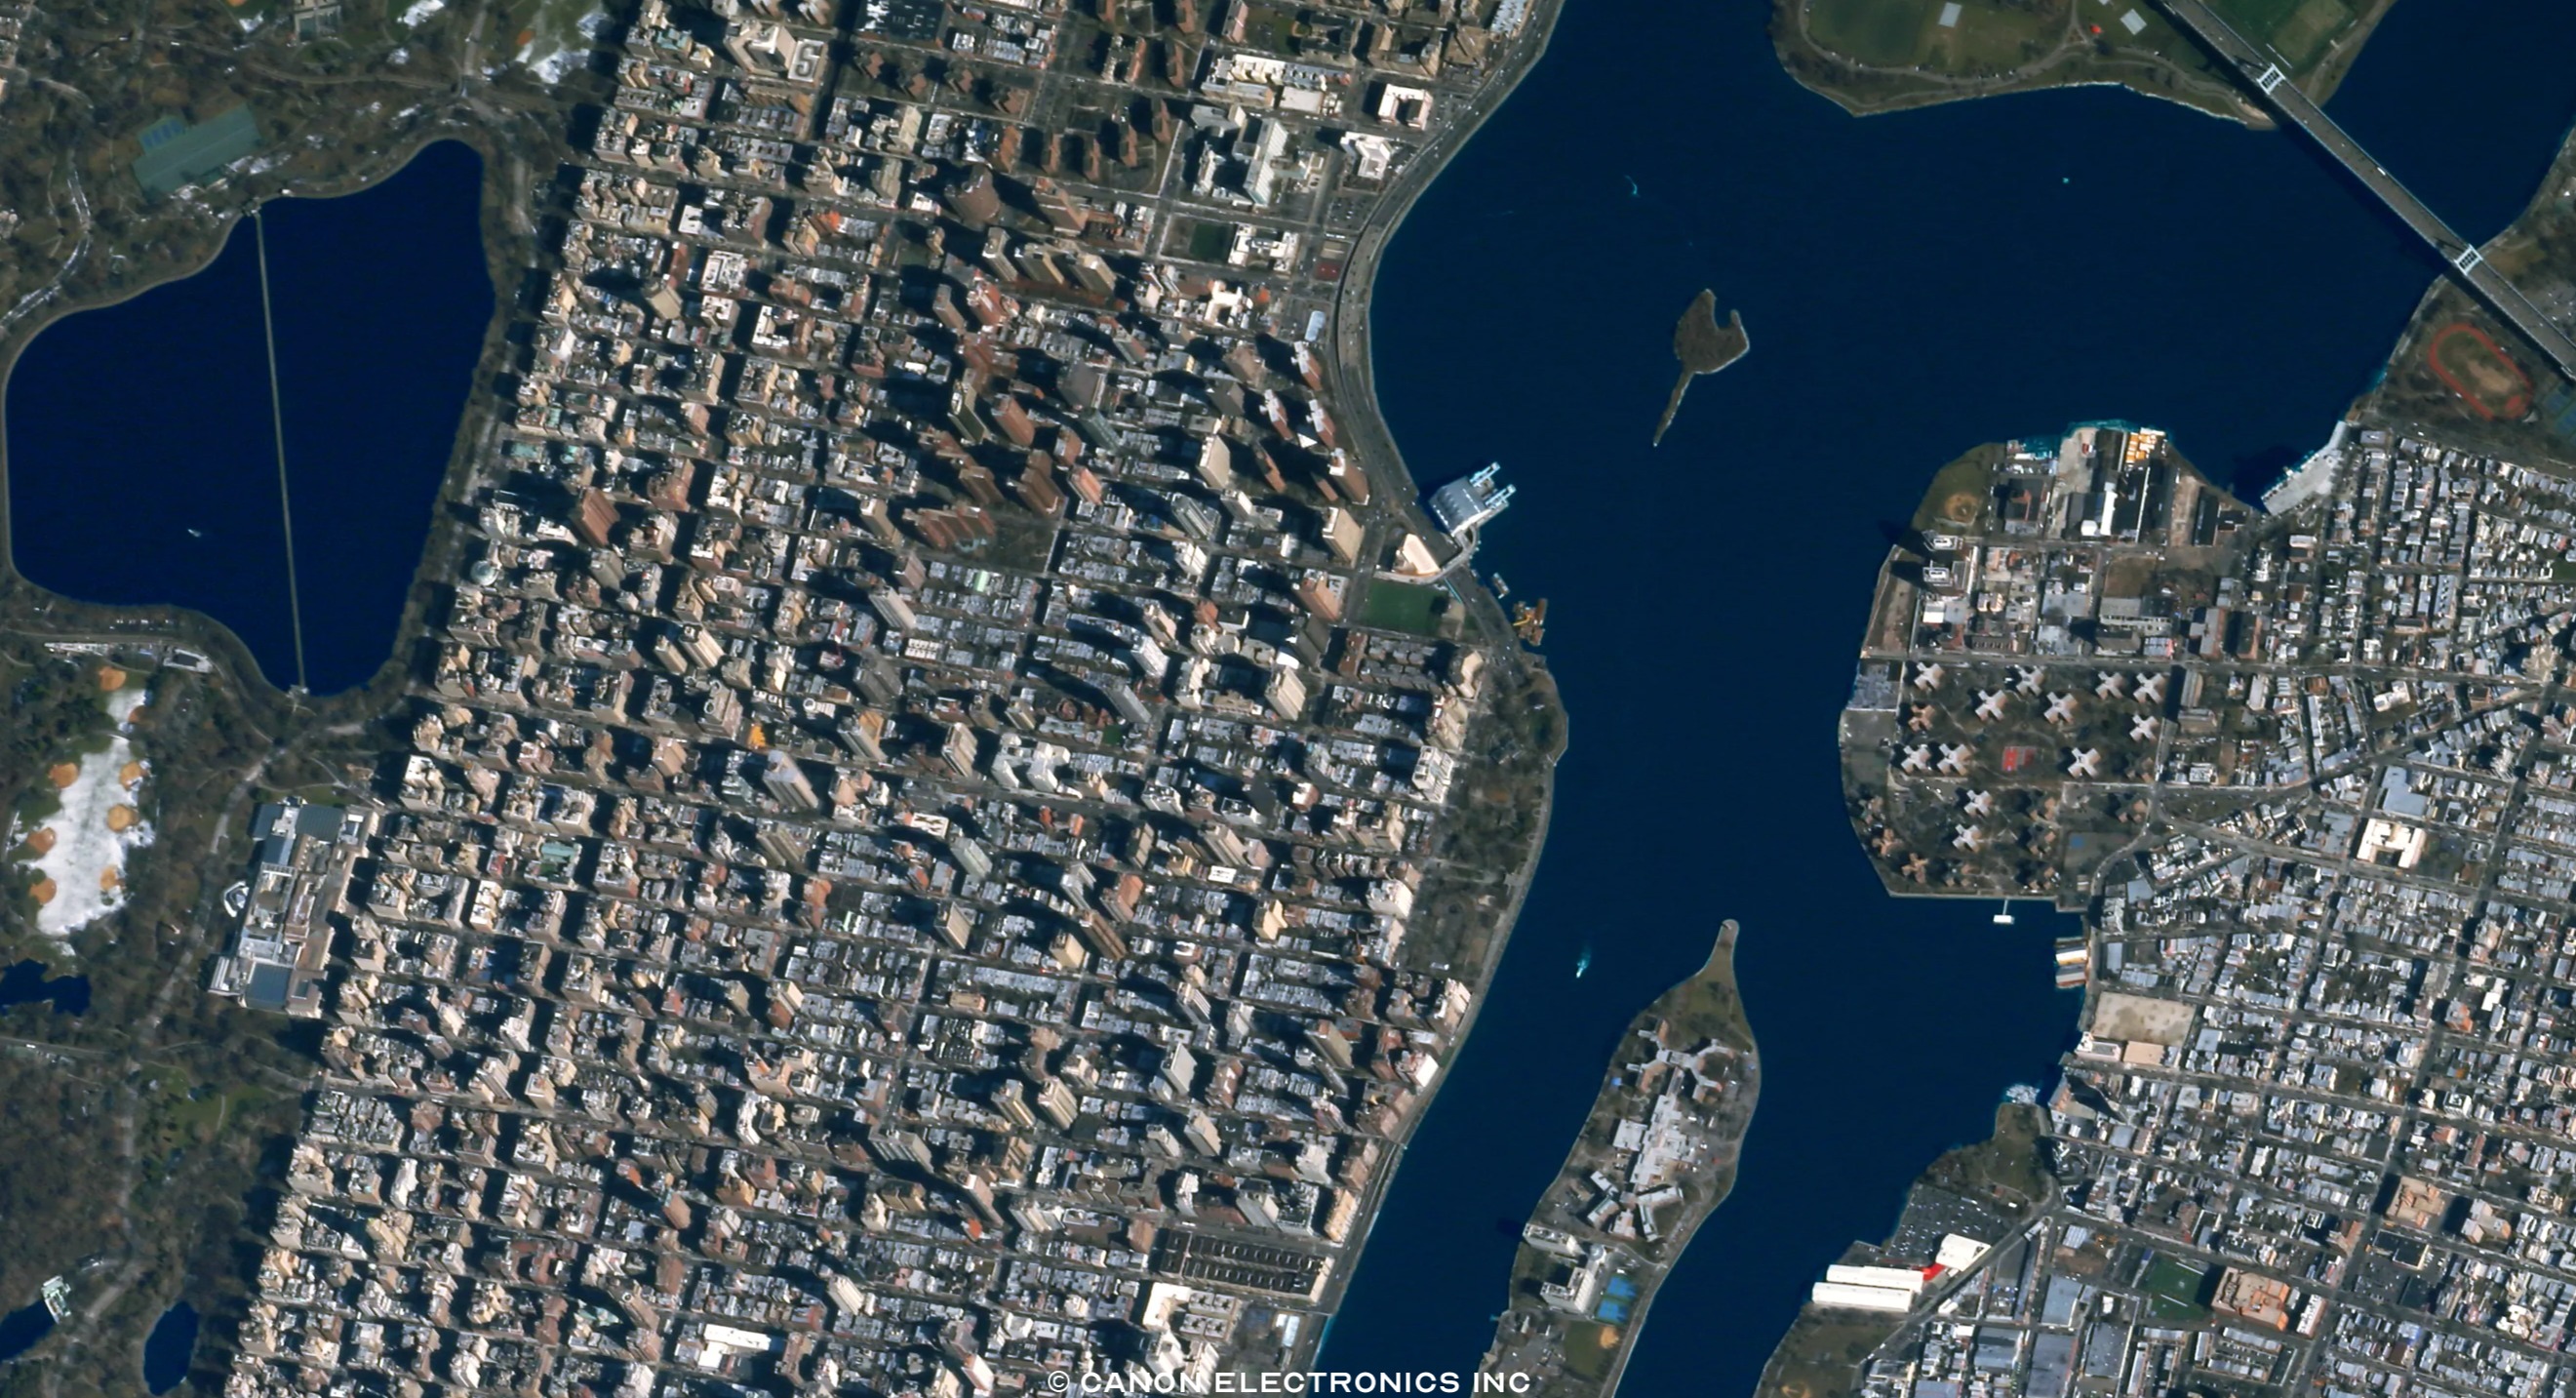 Александров в реальном времени. Нью Йорк 1970 со спутника. Снимки со спутника в реальном времени. Титаник вид со спутника. Камера со спутника в реальном времени.